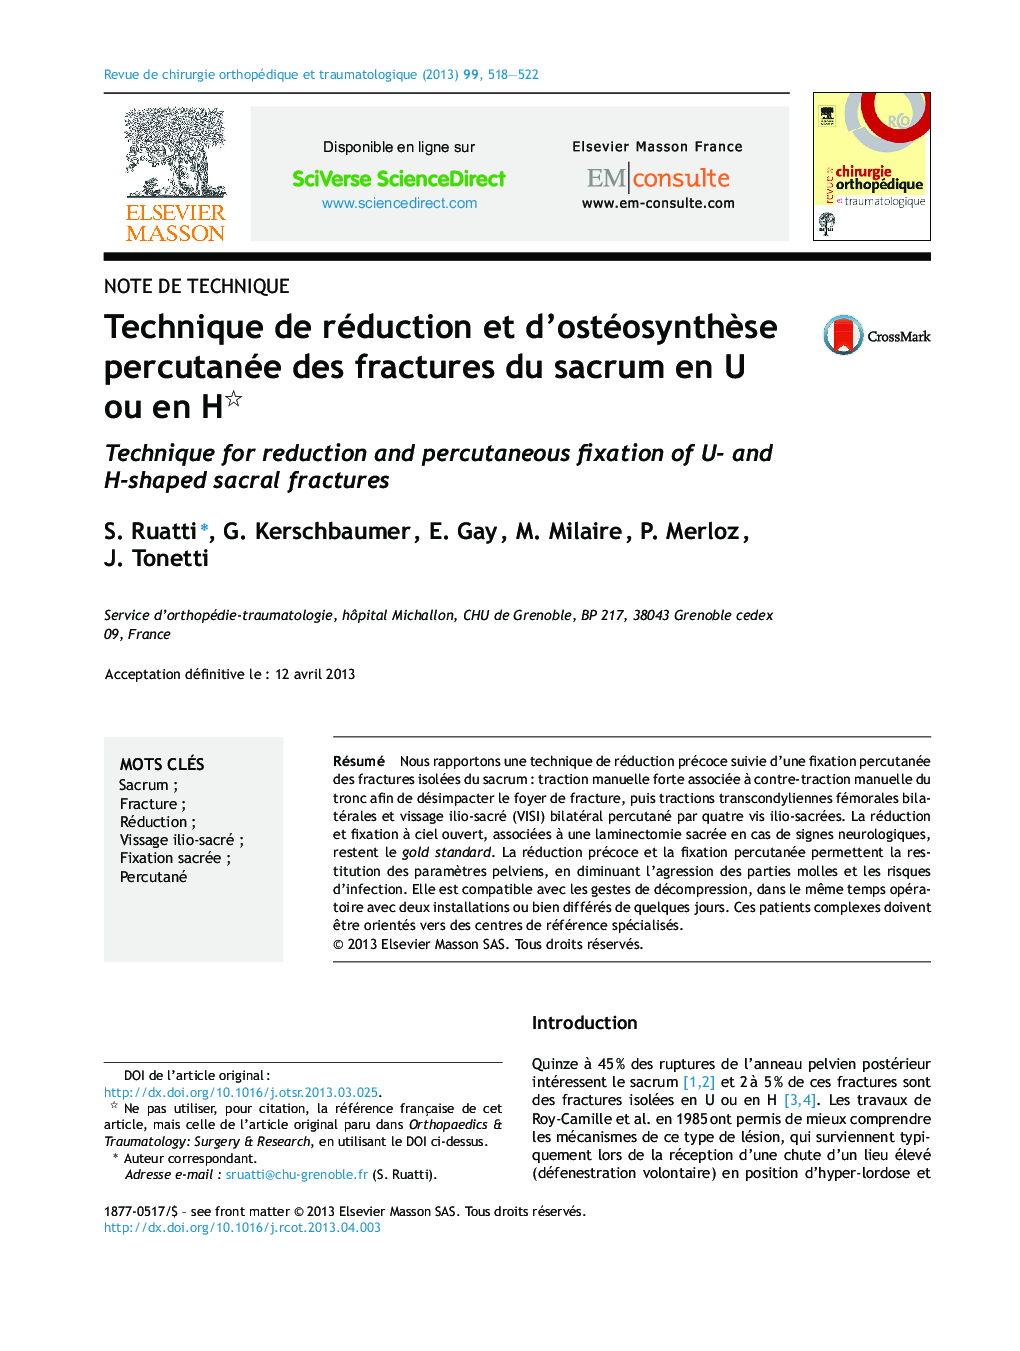 Technique de réduction et d’ostéosynthèse percutanée des fractures du sacrum en U ou en H 